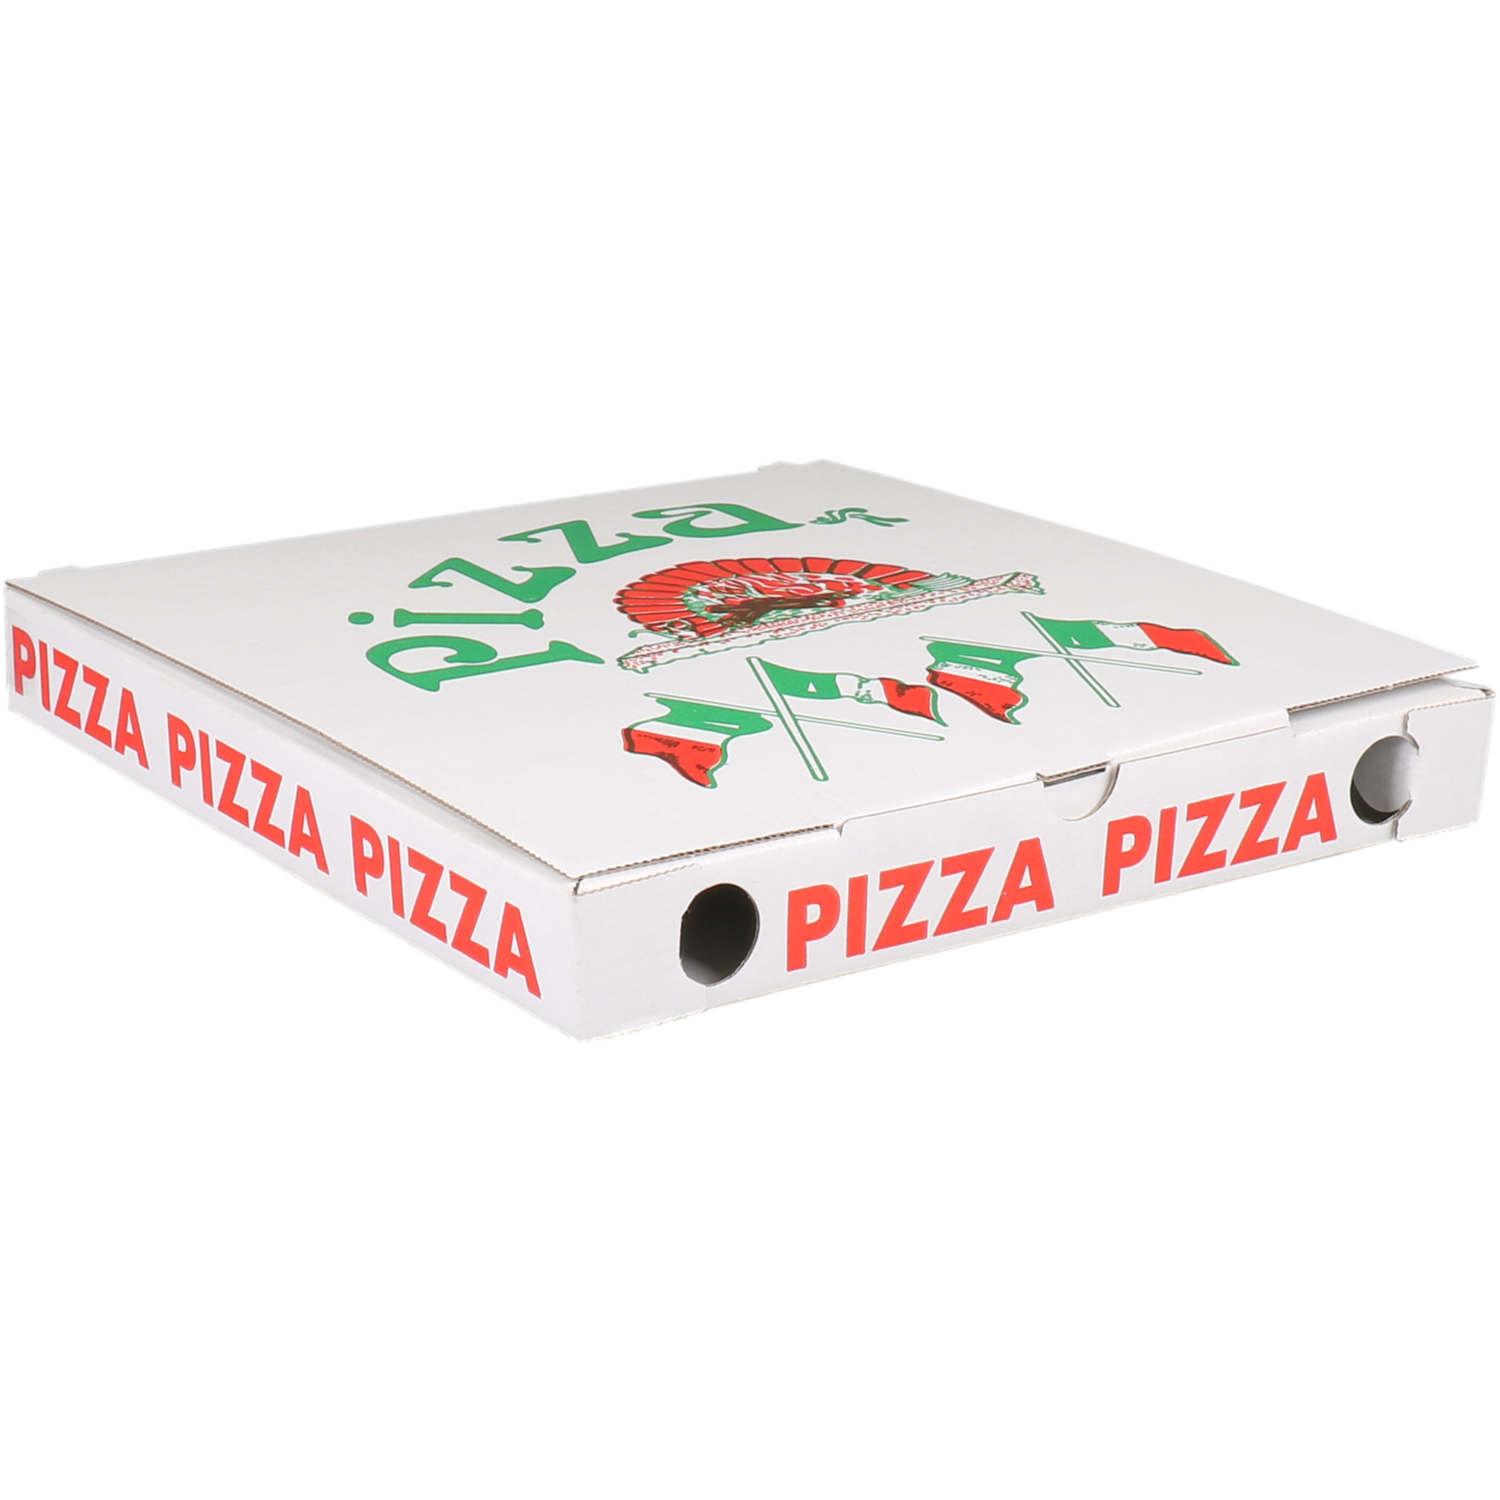  Pizzadoos, Vegetale, golfkarton, 26x26x3cm, vegetale, wit 1